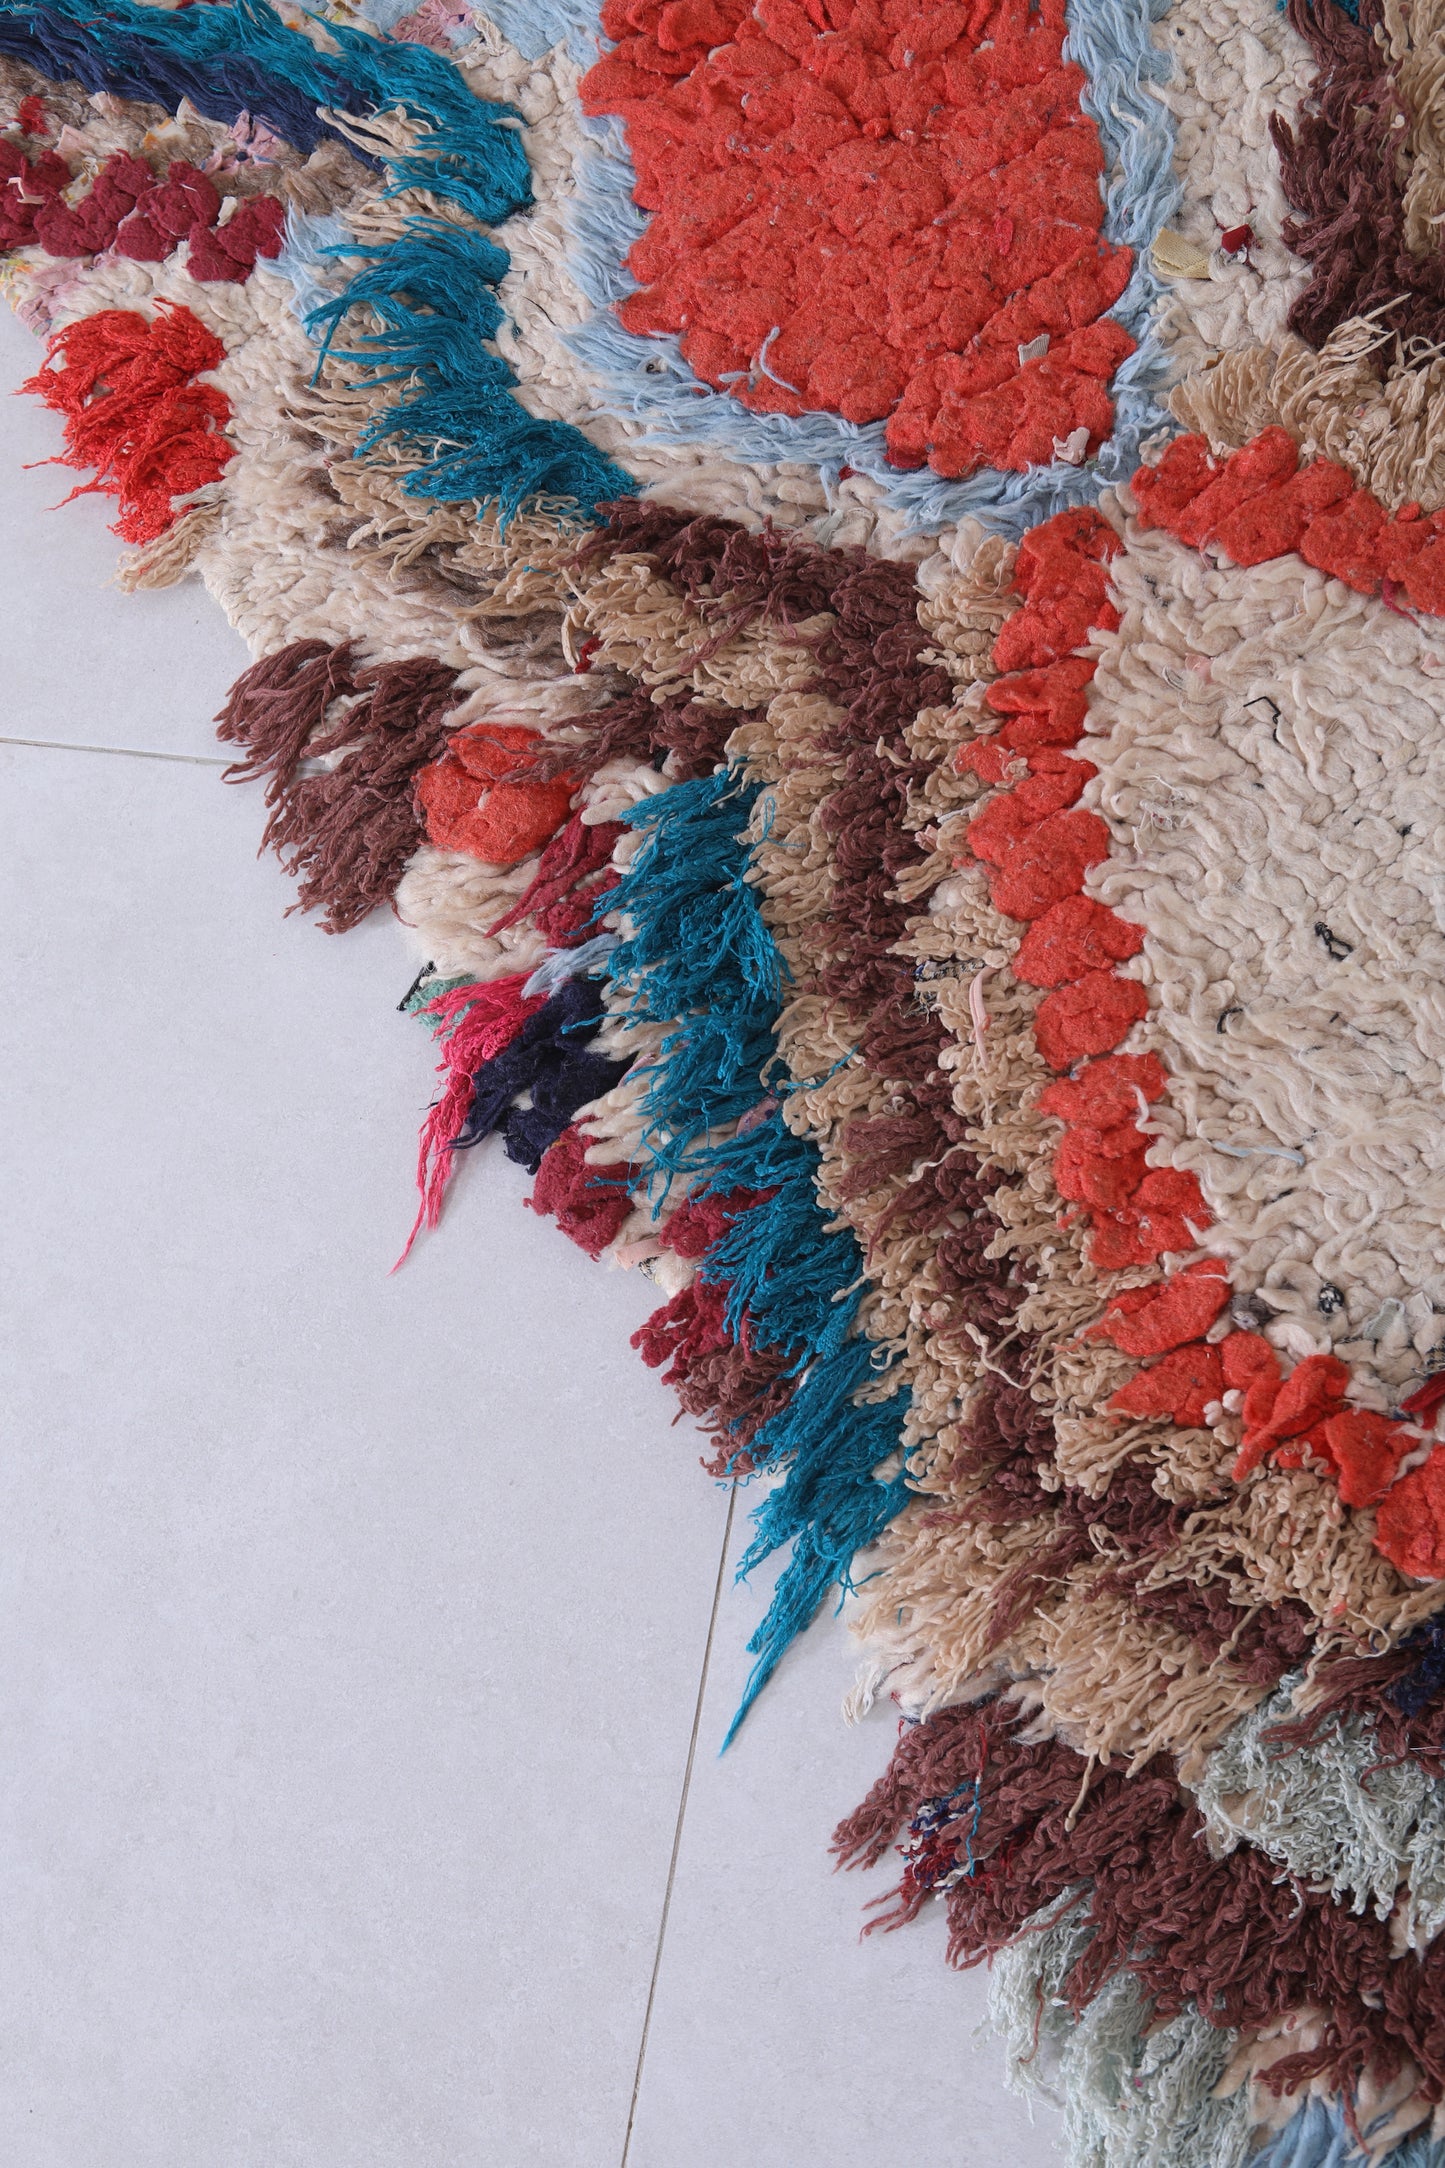 Moroccan rug 1.9 X 4.8 Feet